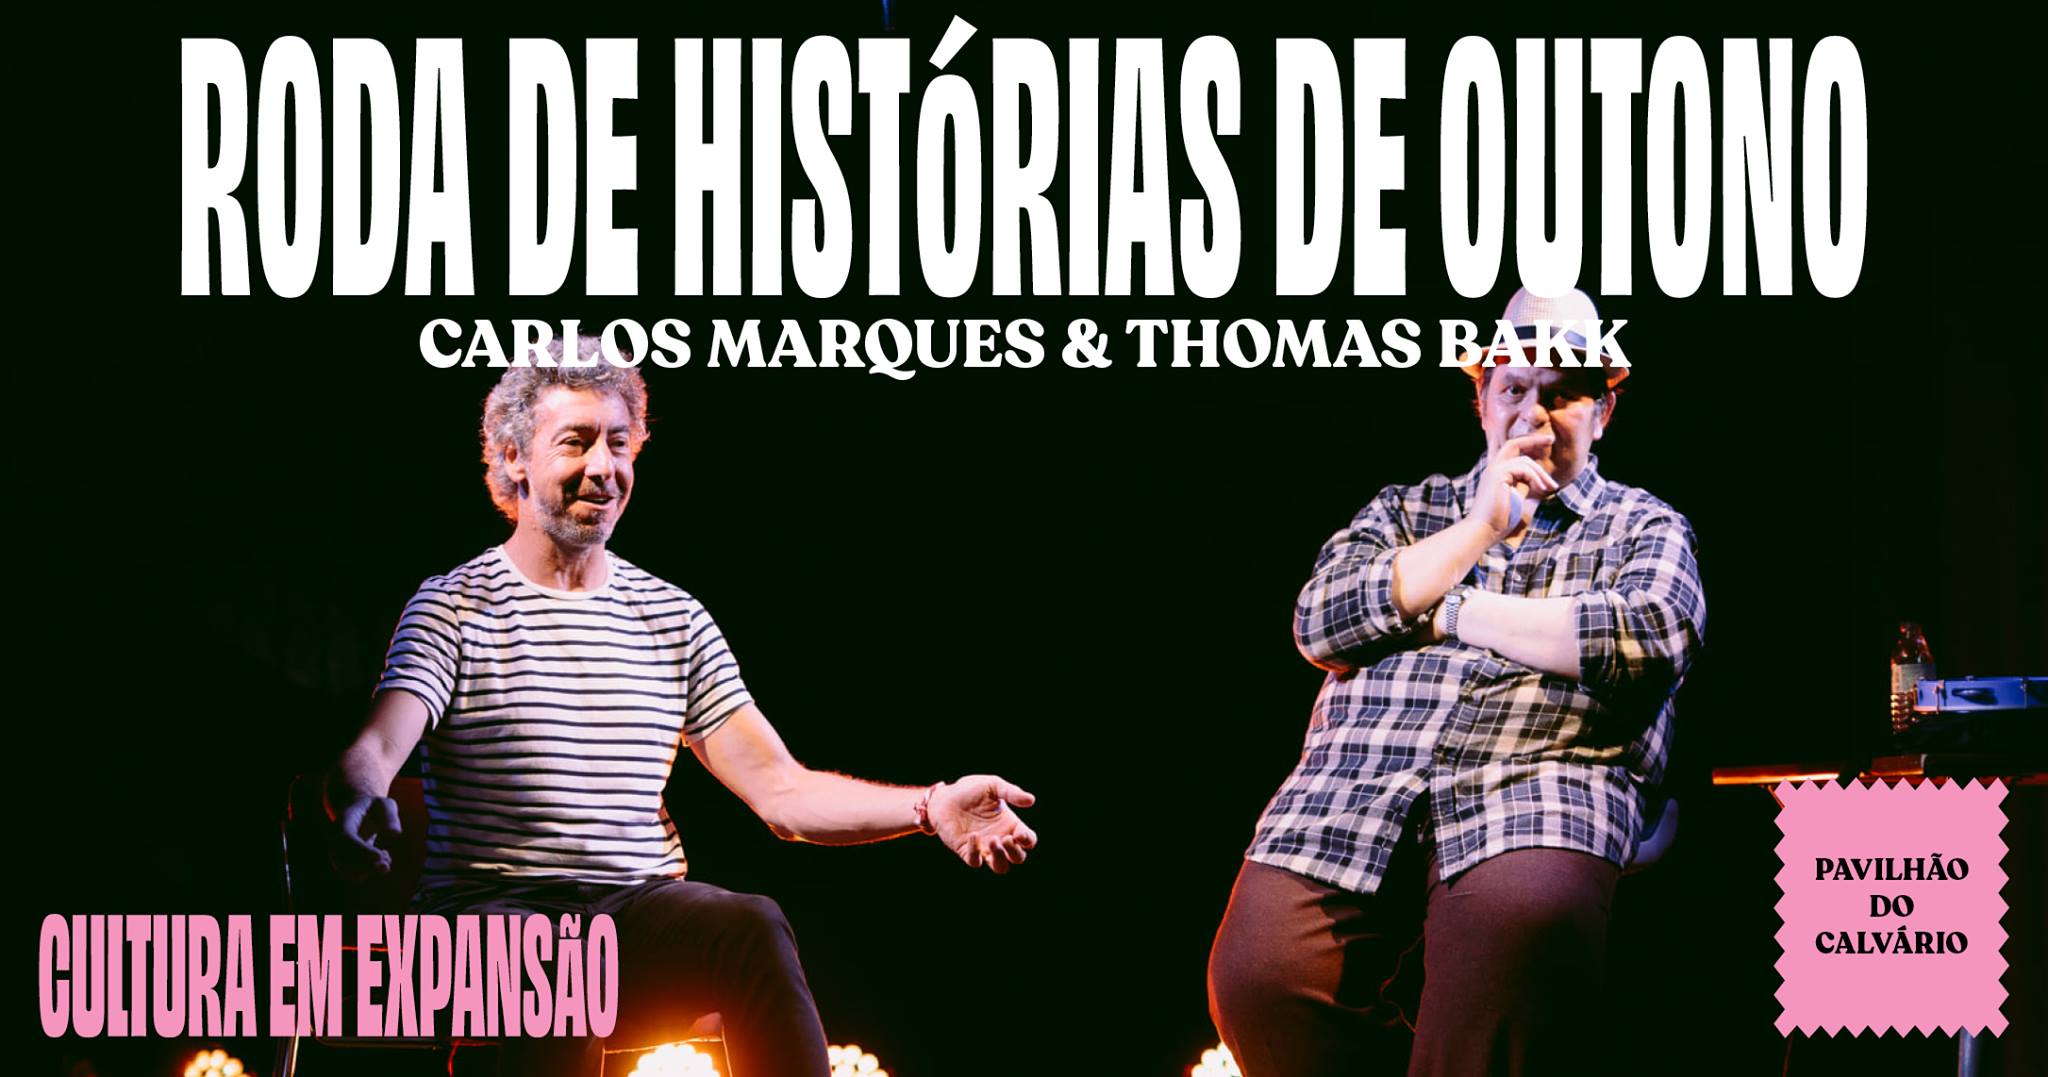 RODA DE HISTÓRIAS DE OUTONO | CARLOS MARQUES & THOMAS BAKK